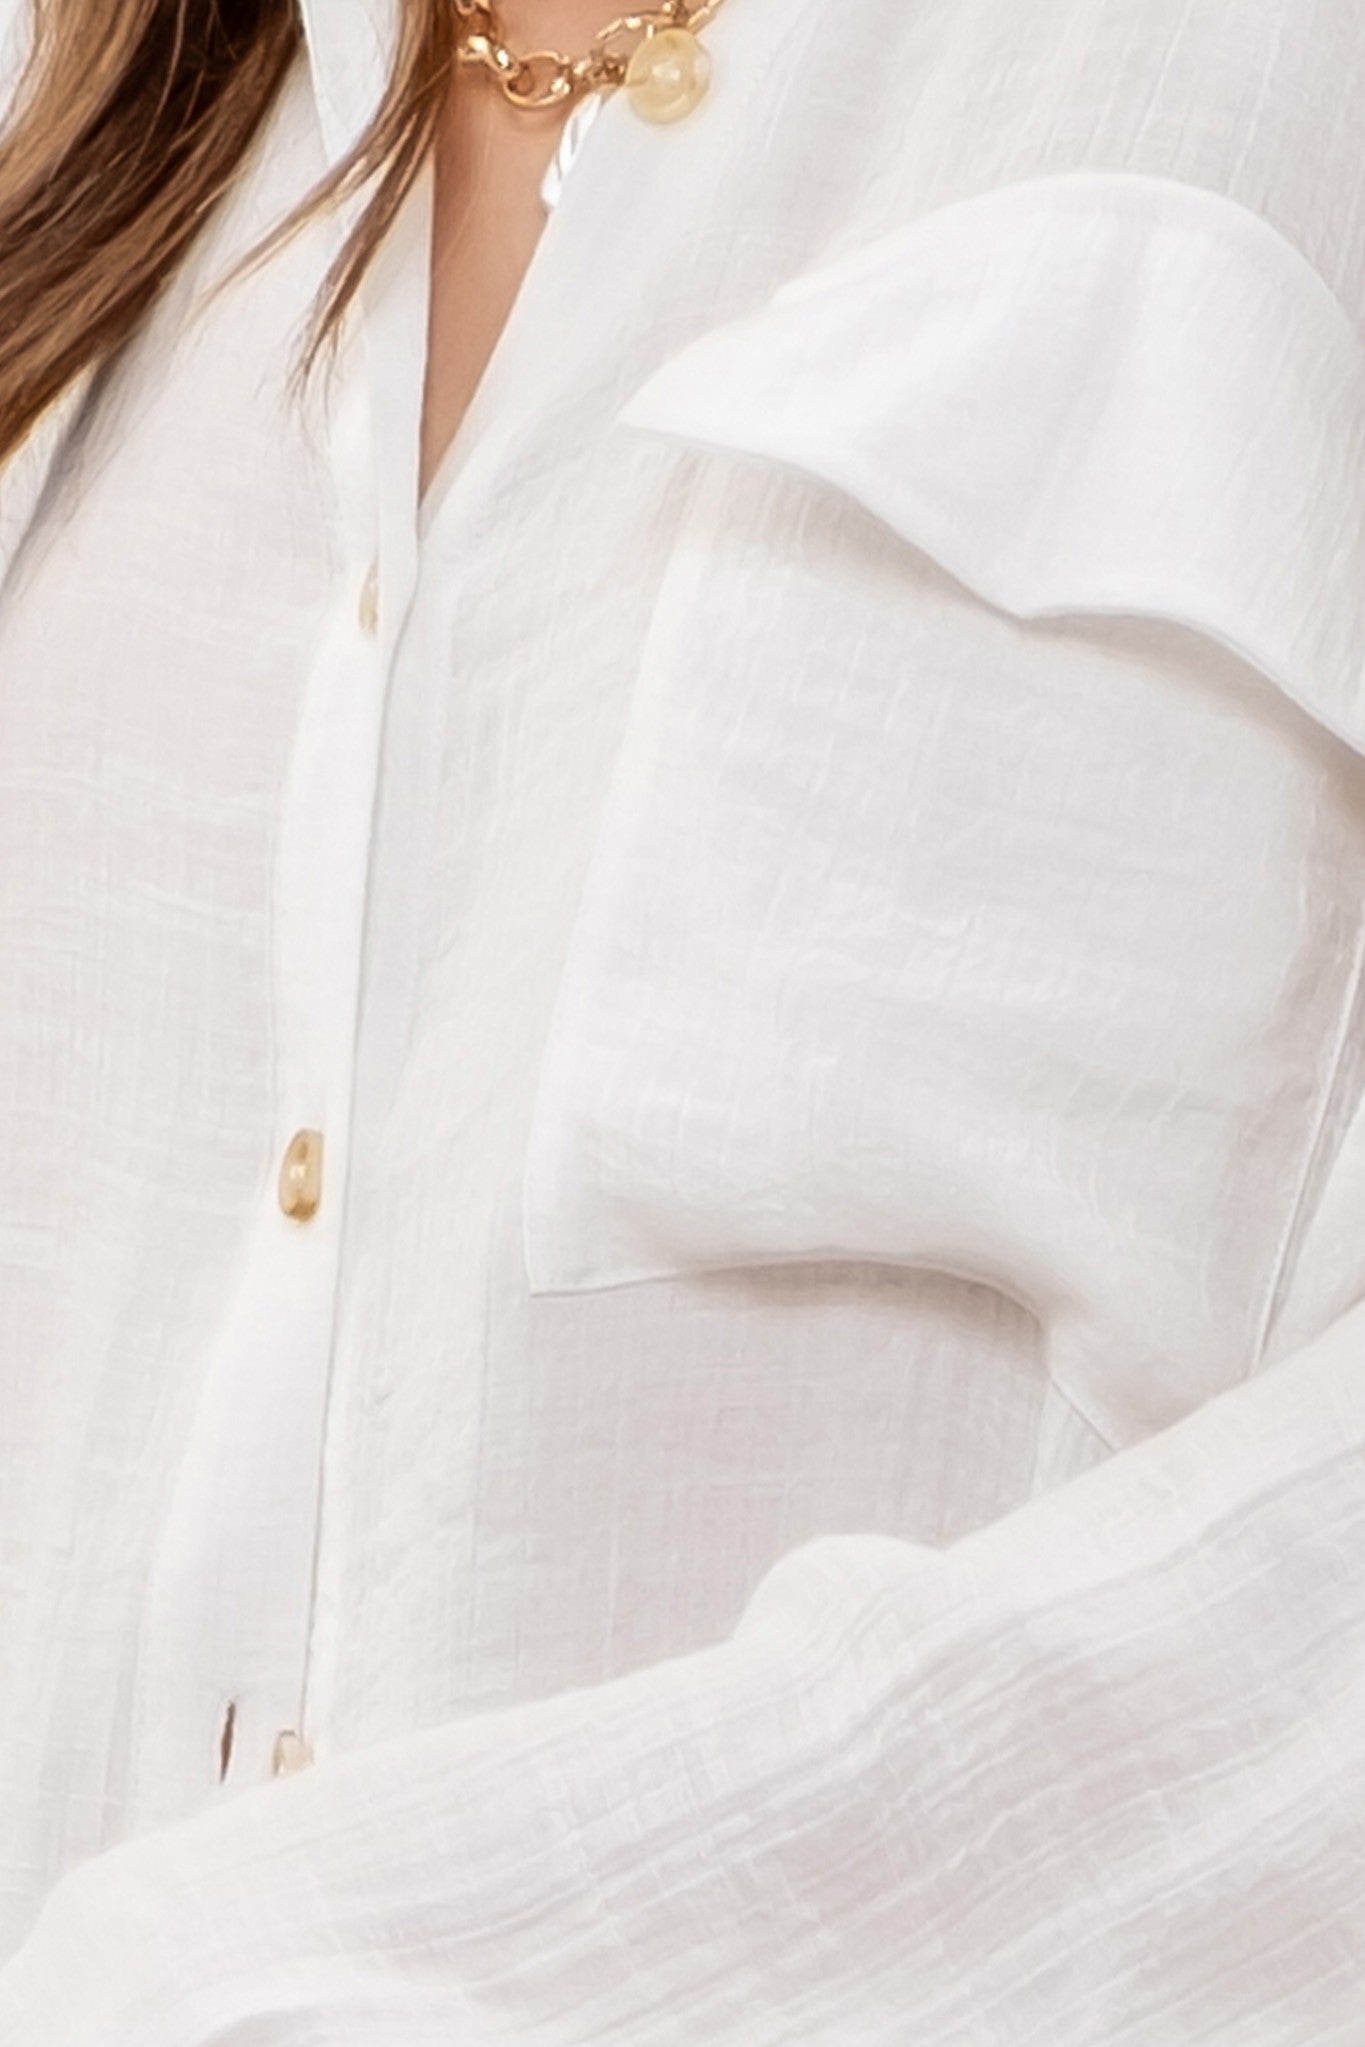 The Melia White Button-down Top